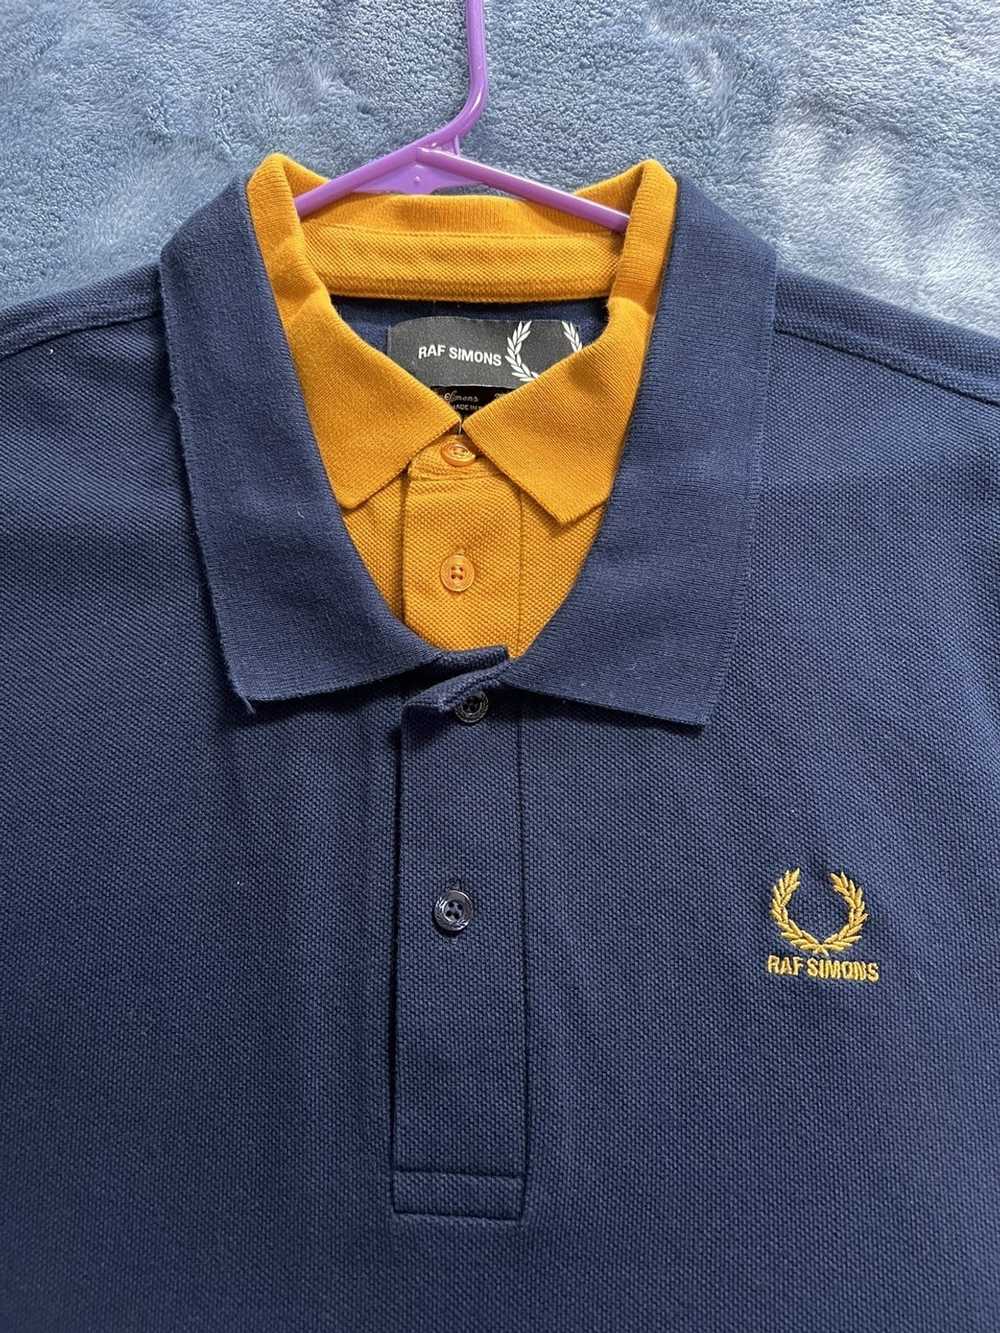 Fred Perry × Raf Simons Double collar polo shirt - image 3